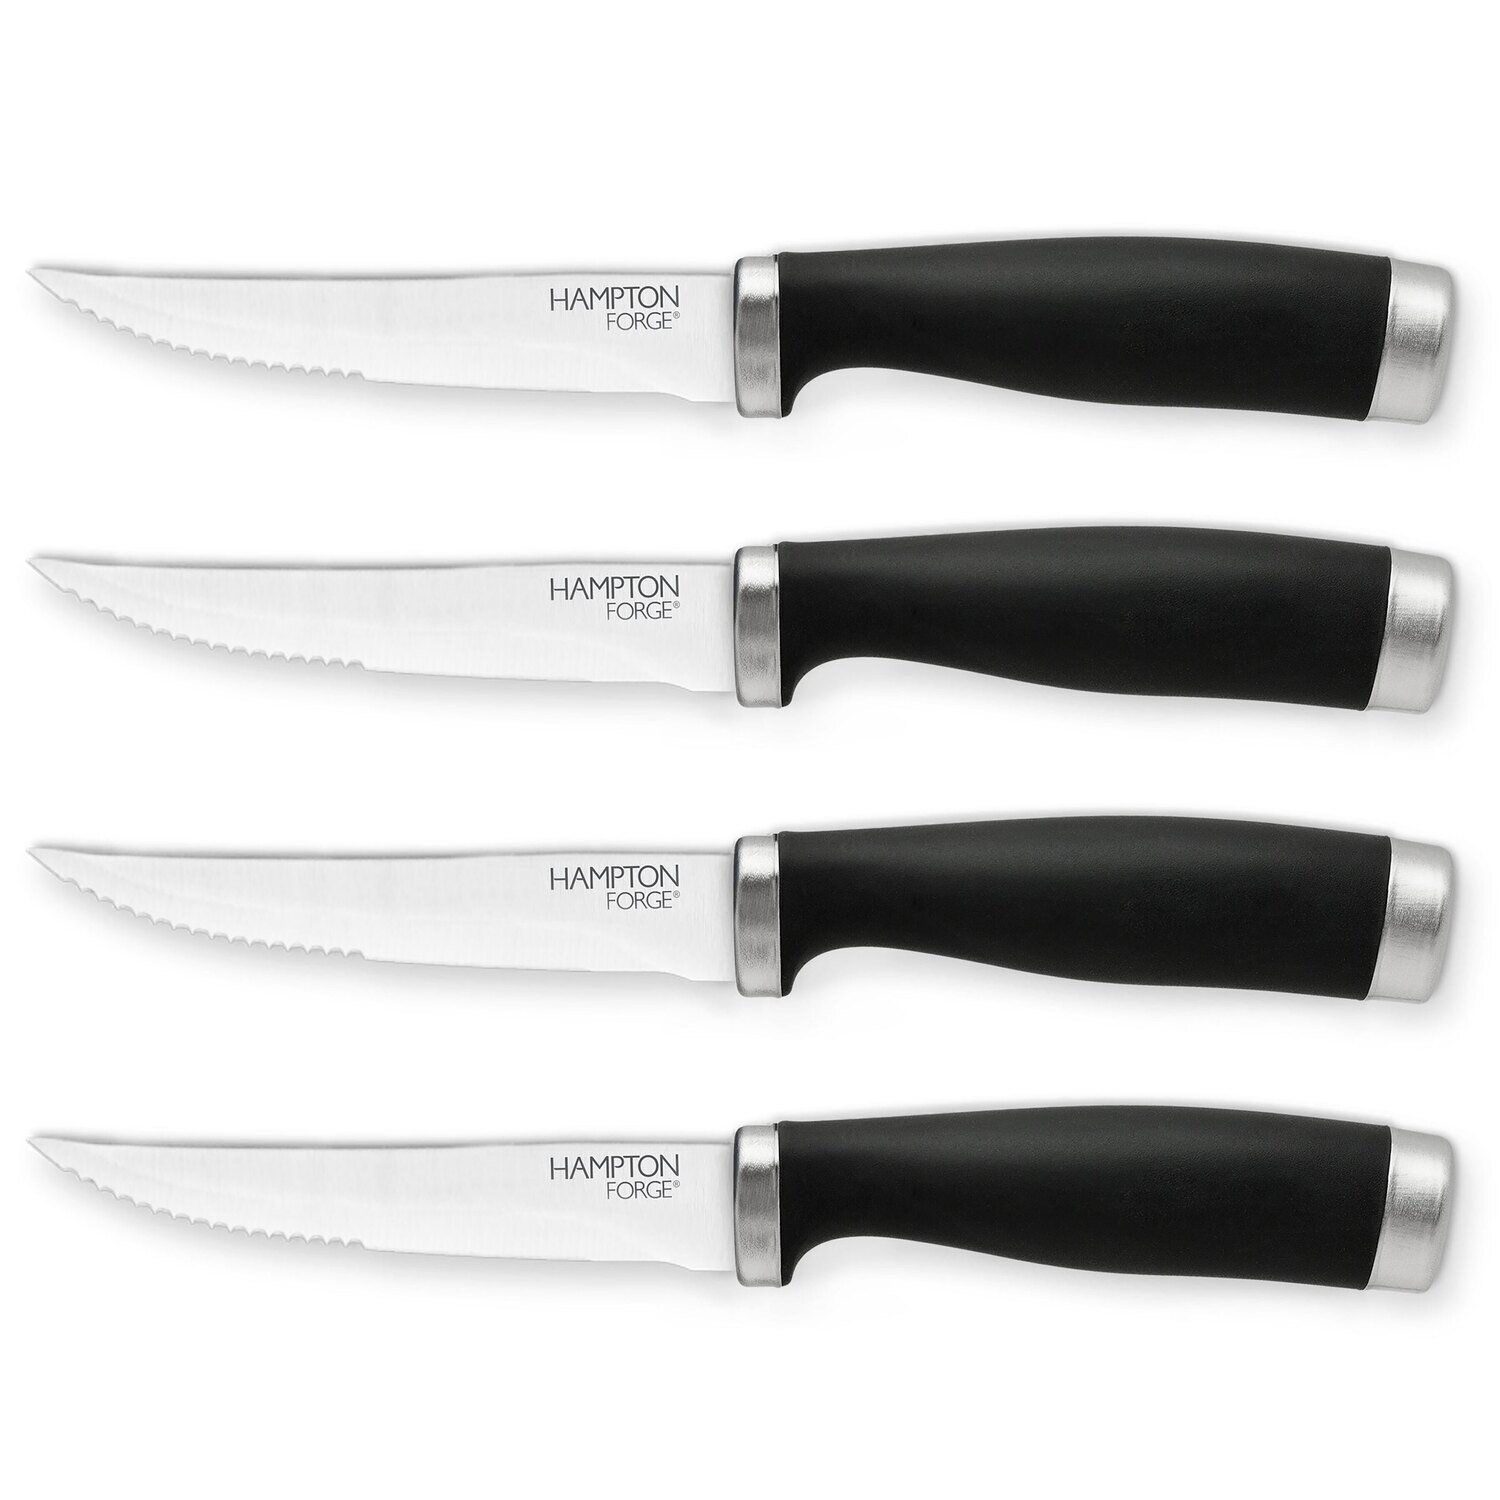 Hampton Forge Epicure Blk 4 Piece Steak Knives Set Clampack HMC01A103S